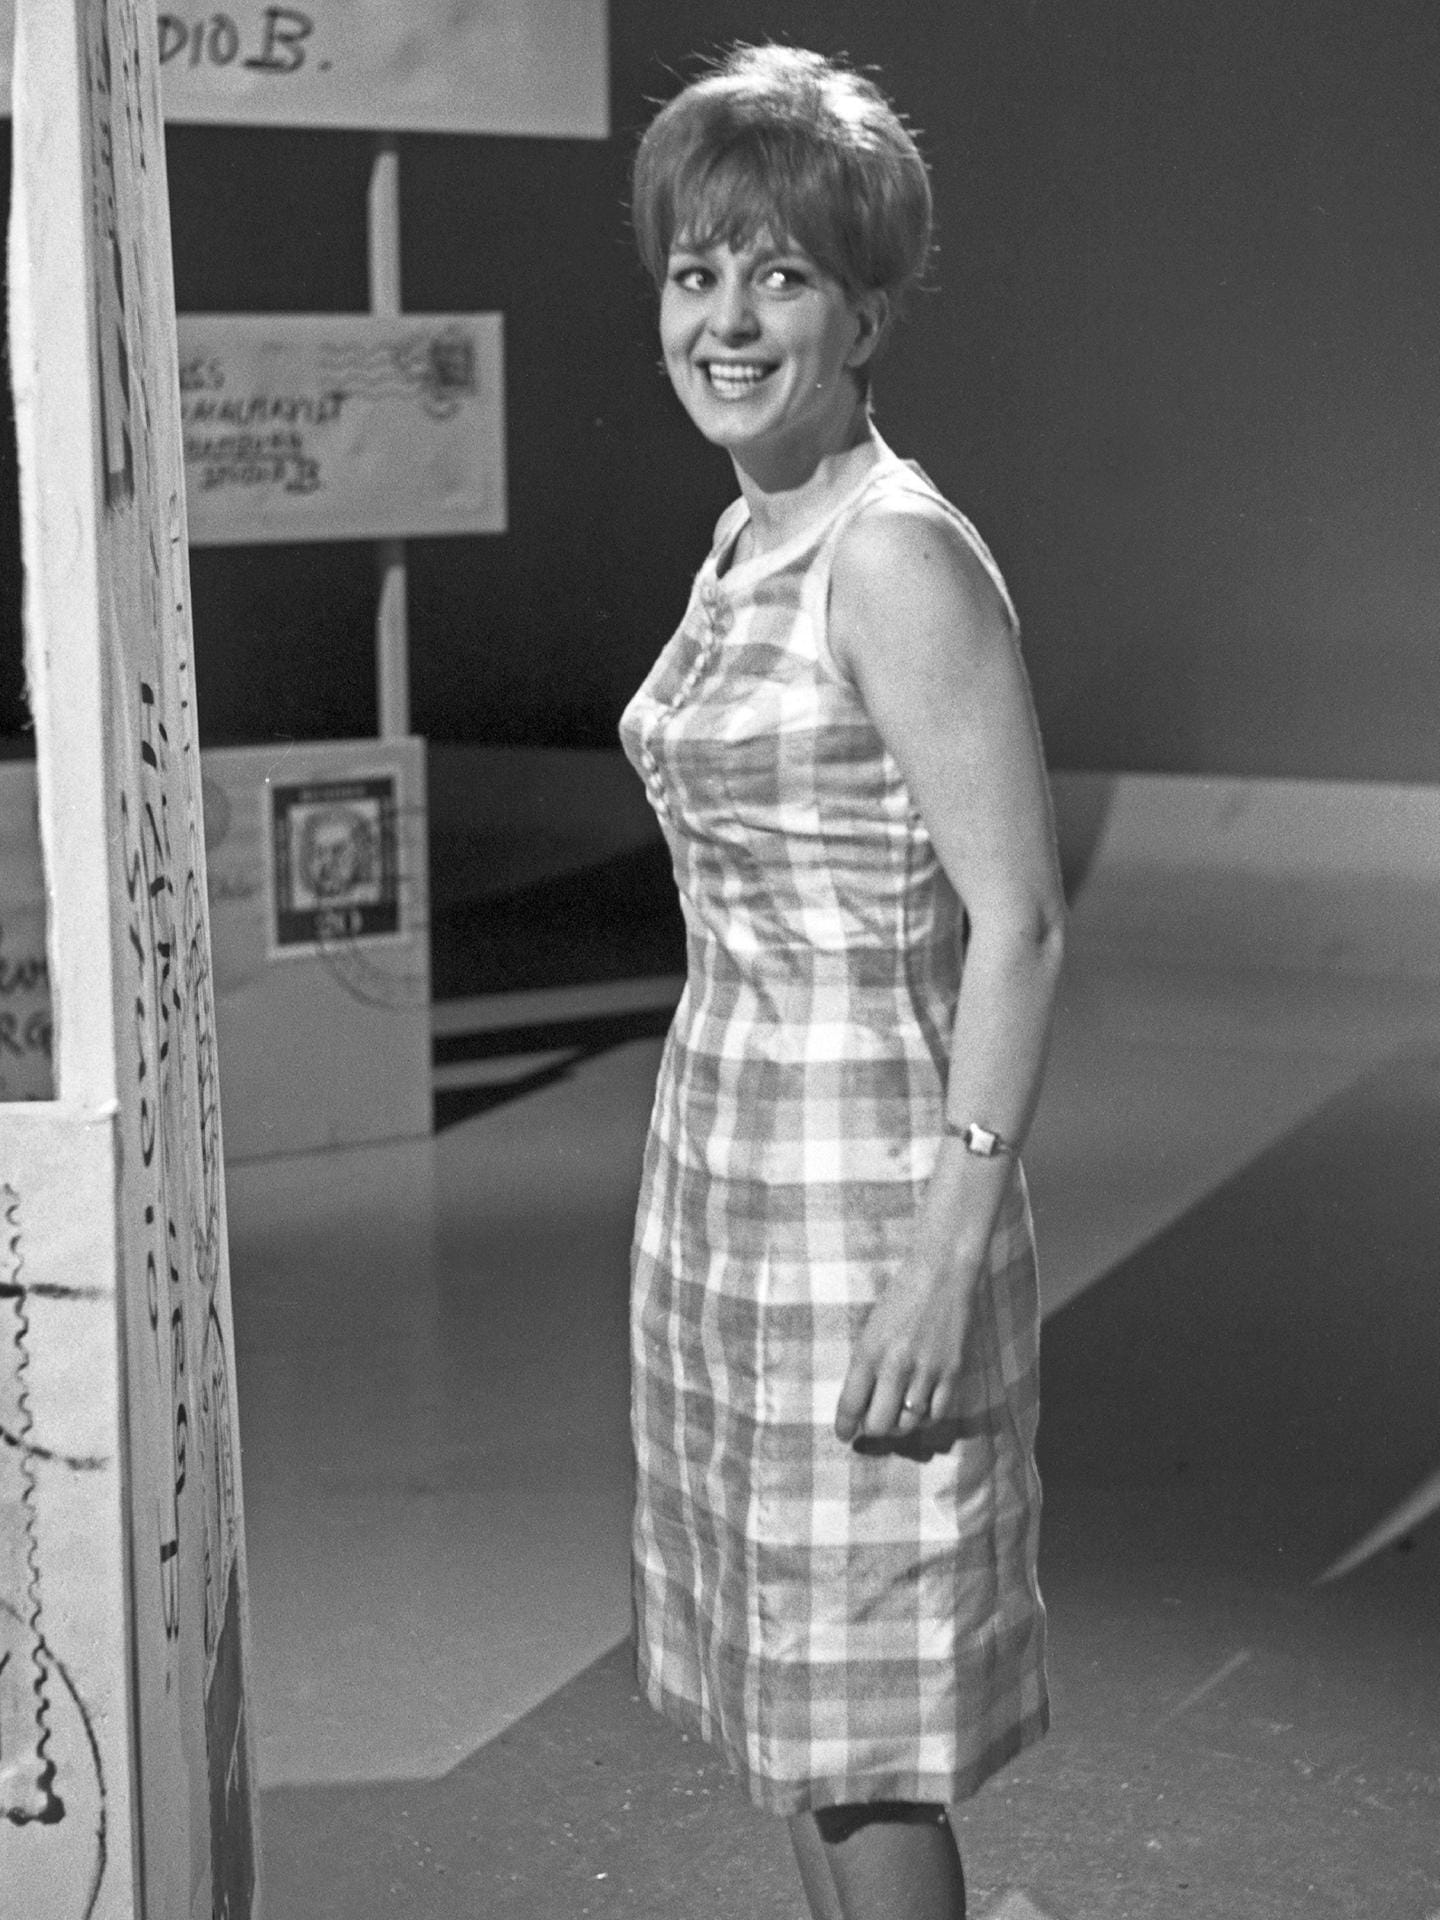 1969: Siw Malmkvist holt für Deutschland 8 Punkte und belegt den 9. Platz